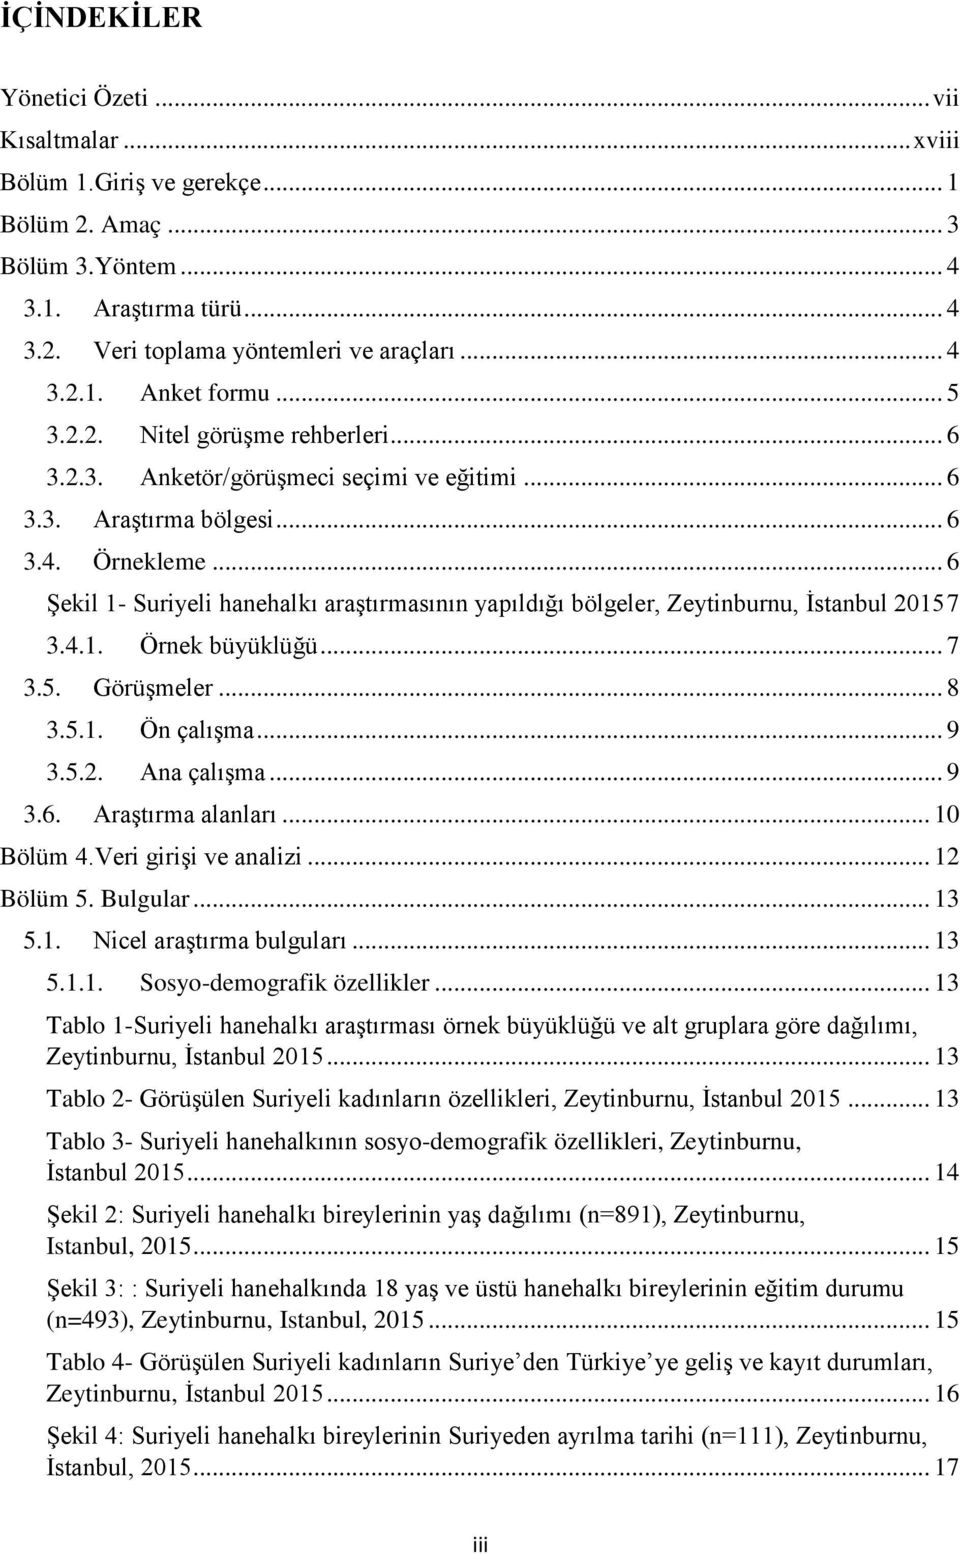 .. 6 Şekil 1- Suriyeli hanehalkı araştırmasının yapıldığı bölgeler, Zeytinburnu, İstanbul 2015 7 3.4.1. Örnek büyüklüğü... 7 3.5. Görüşmeler... 8 3.5.1. Ön çalışma... 9 3.5.2. Ana çalışma... 9 3.6. Araştırma alanları.